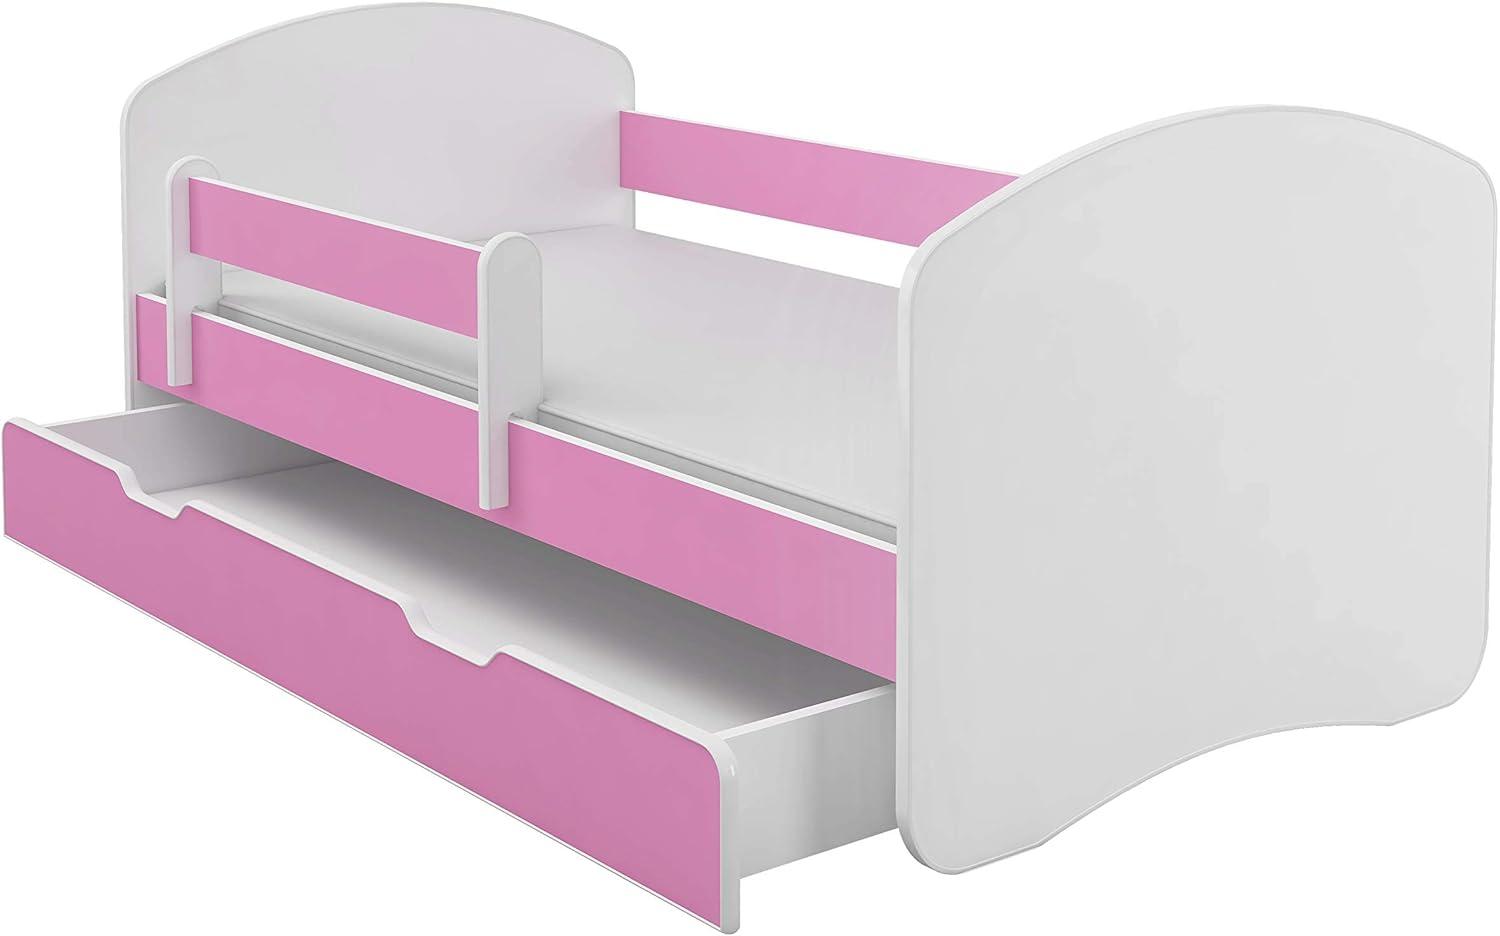 Kinderbett Jugendbett mit einer Schublade und Matratze Weiß ACMA II (140x70 cm + Schublade, Rosa) Bild 1